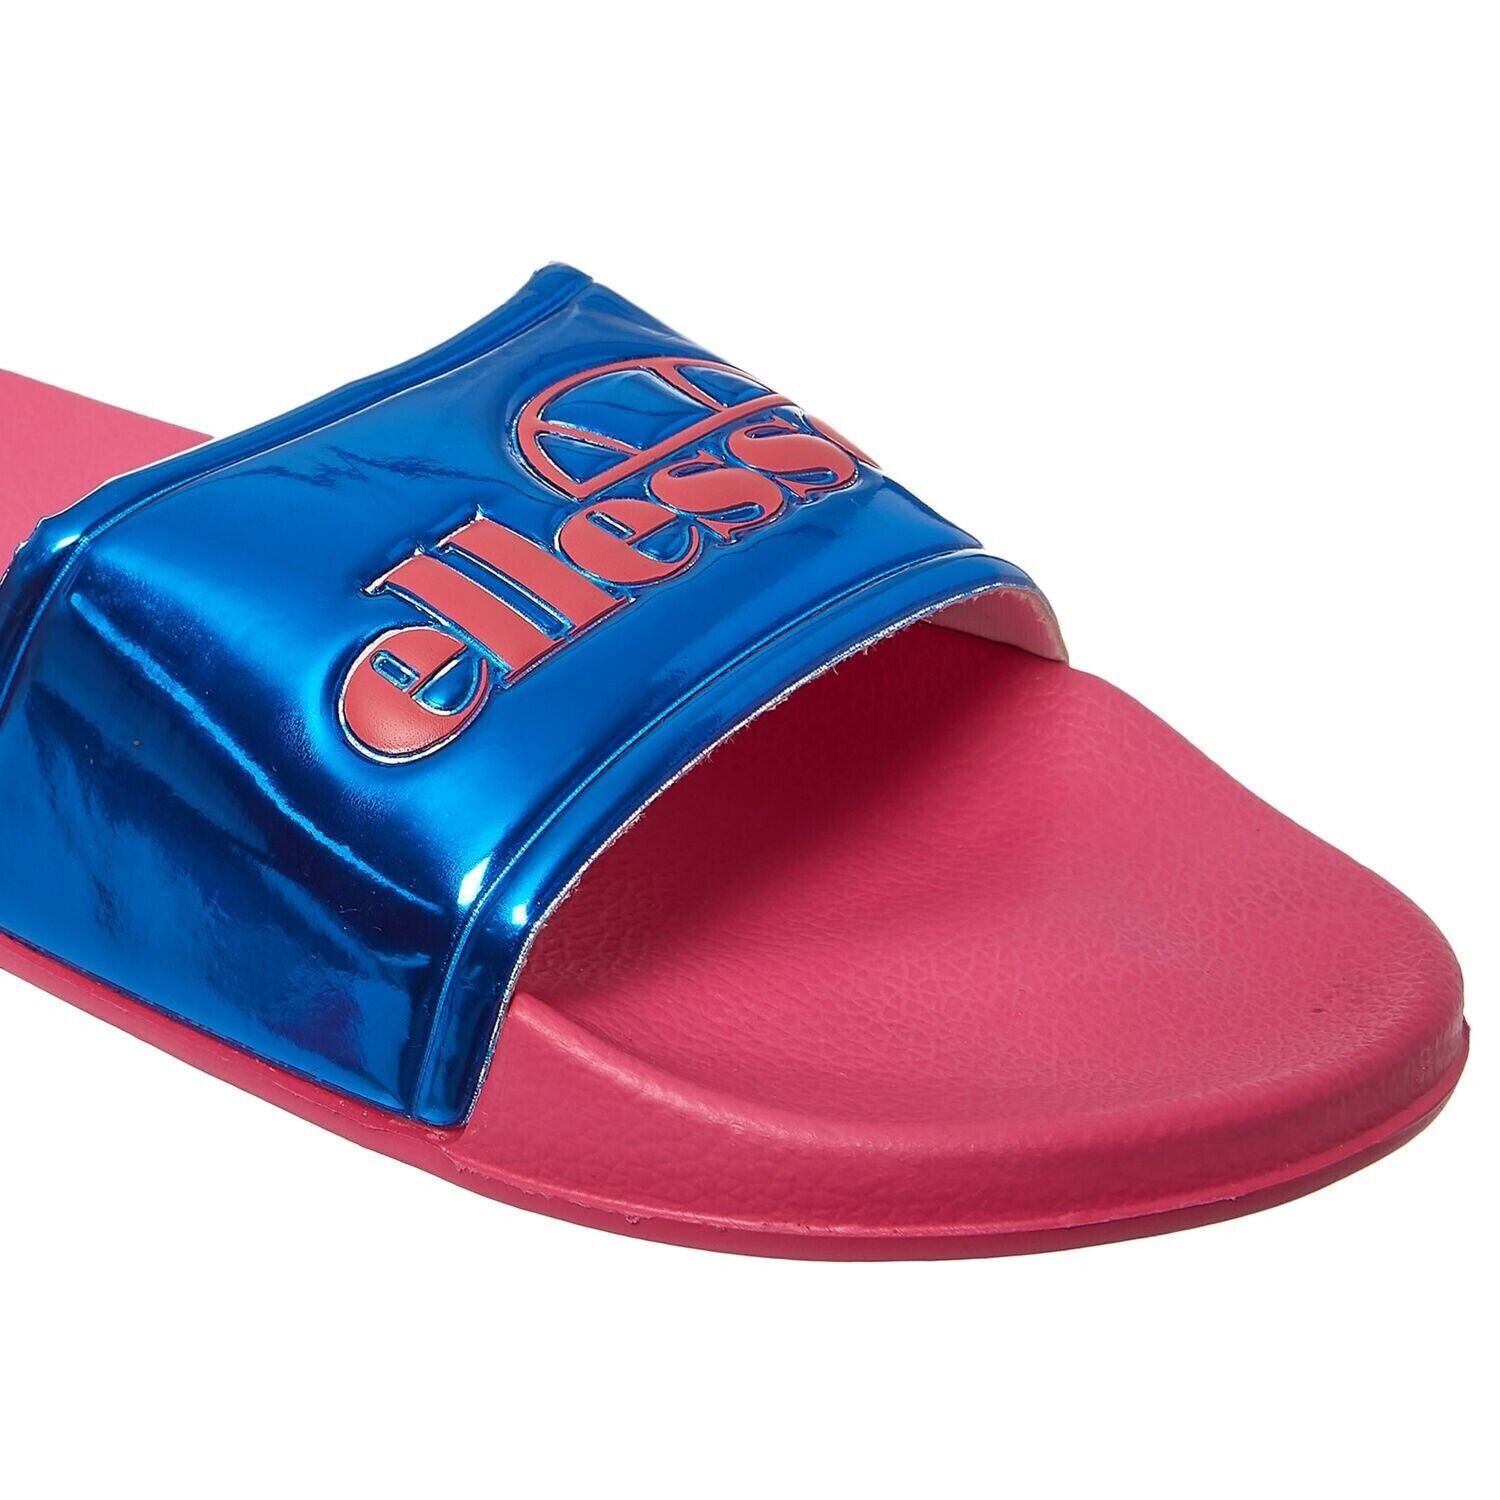 ELLESSE - GISELLE Women's Logo Sliders, Sandals, Pink/Blue, size UK 4 / EU 37